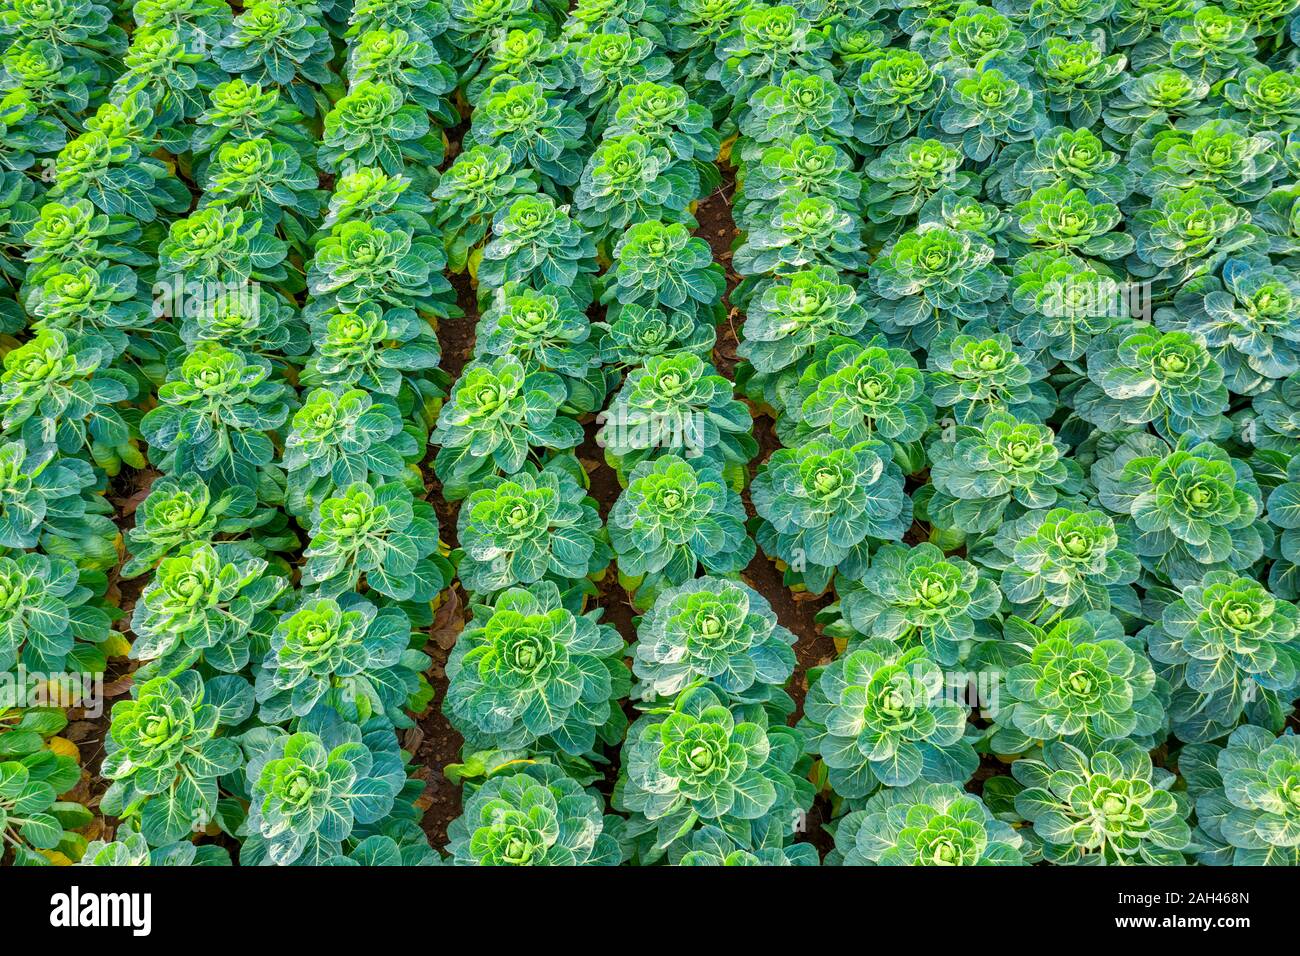 L'Écosse, East Lothian, champ de choux de Bruxelles (Brassica oleracea) Banque D'Images